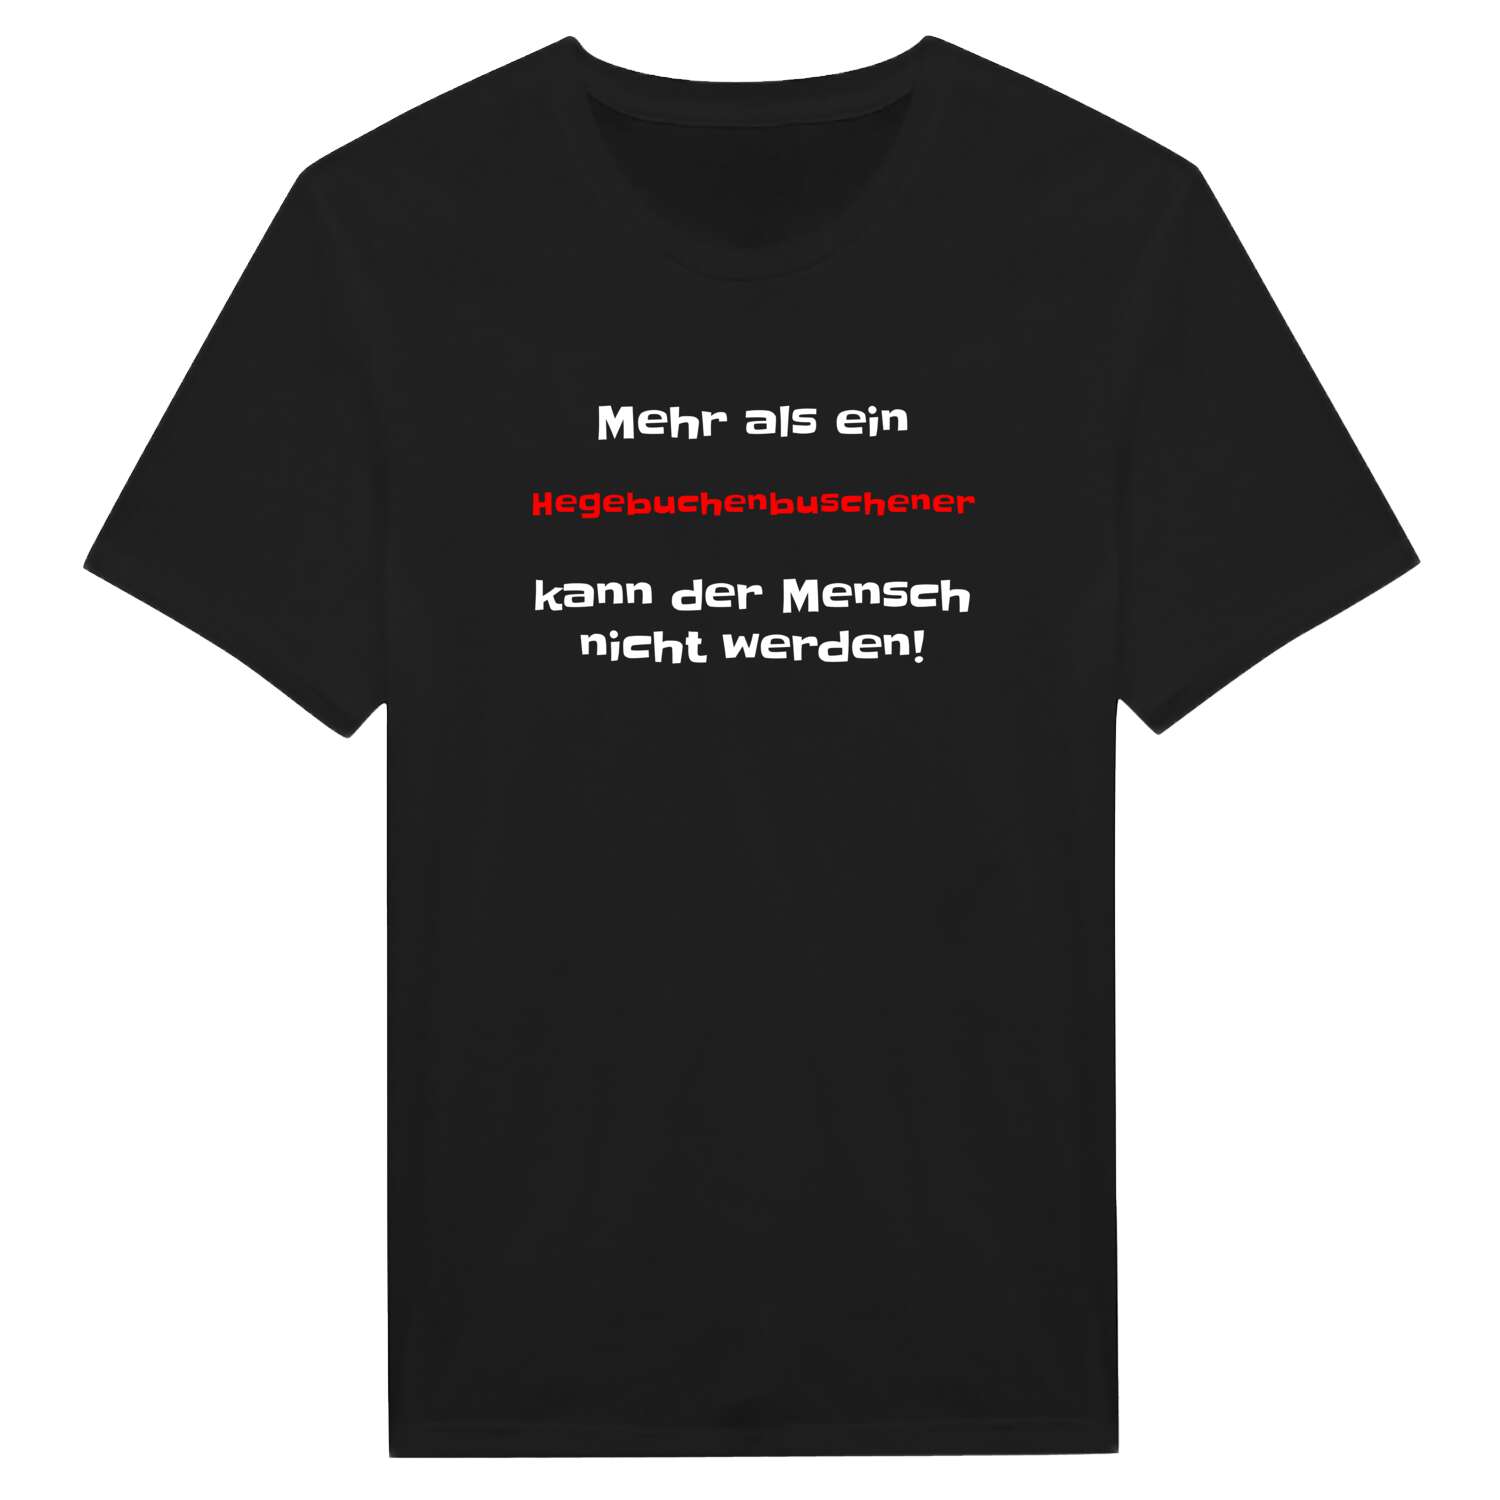 Hegebuchenbusch T-Shirt »Mehr als ein«